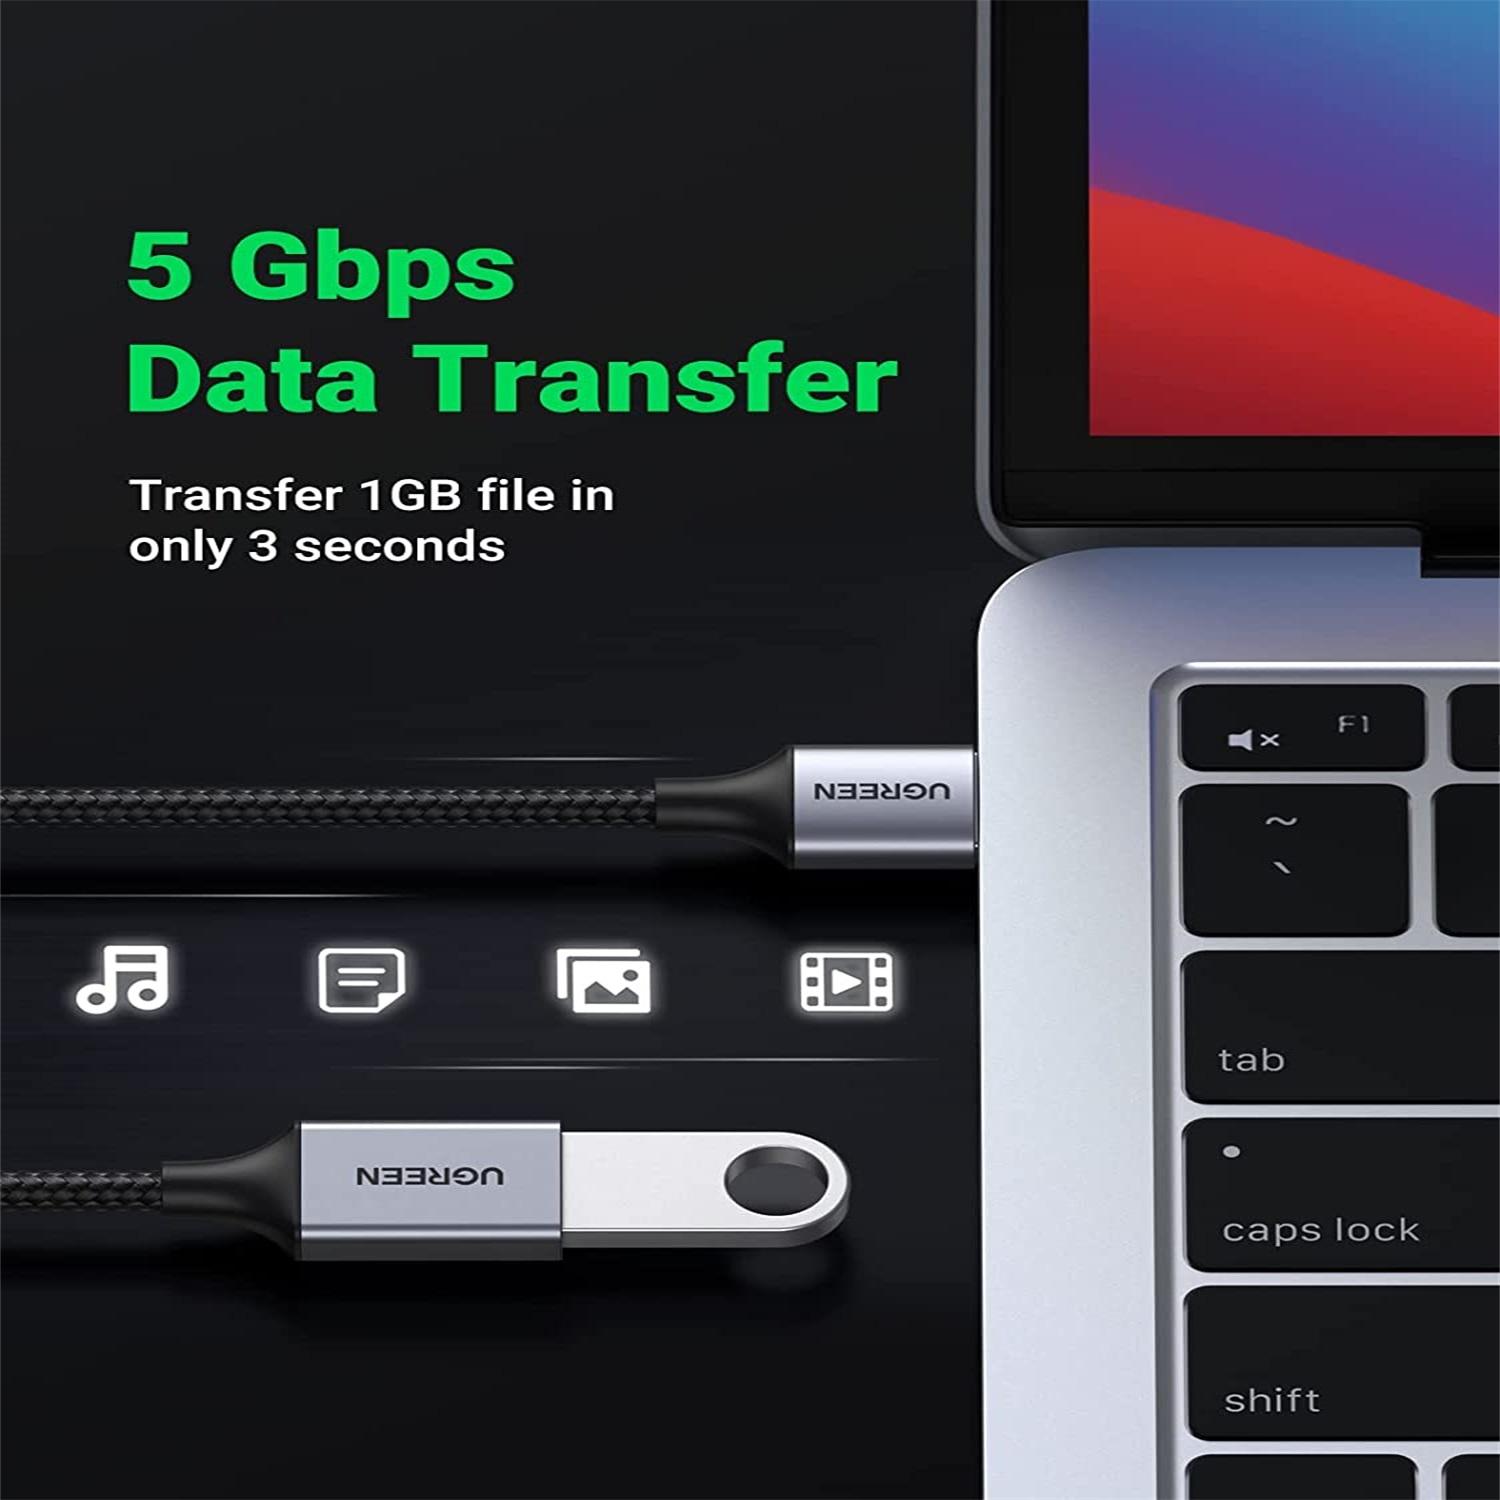 Ugreen 10495 Dây - Cáp USB 3.0 nối dài 1M chính hãng  cao cấp